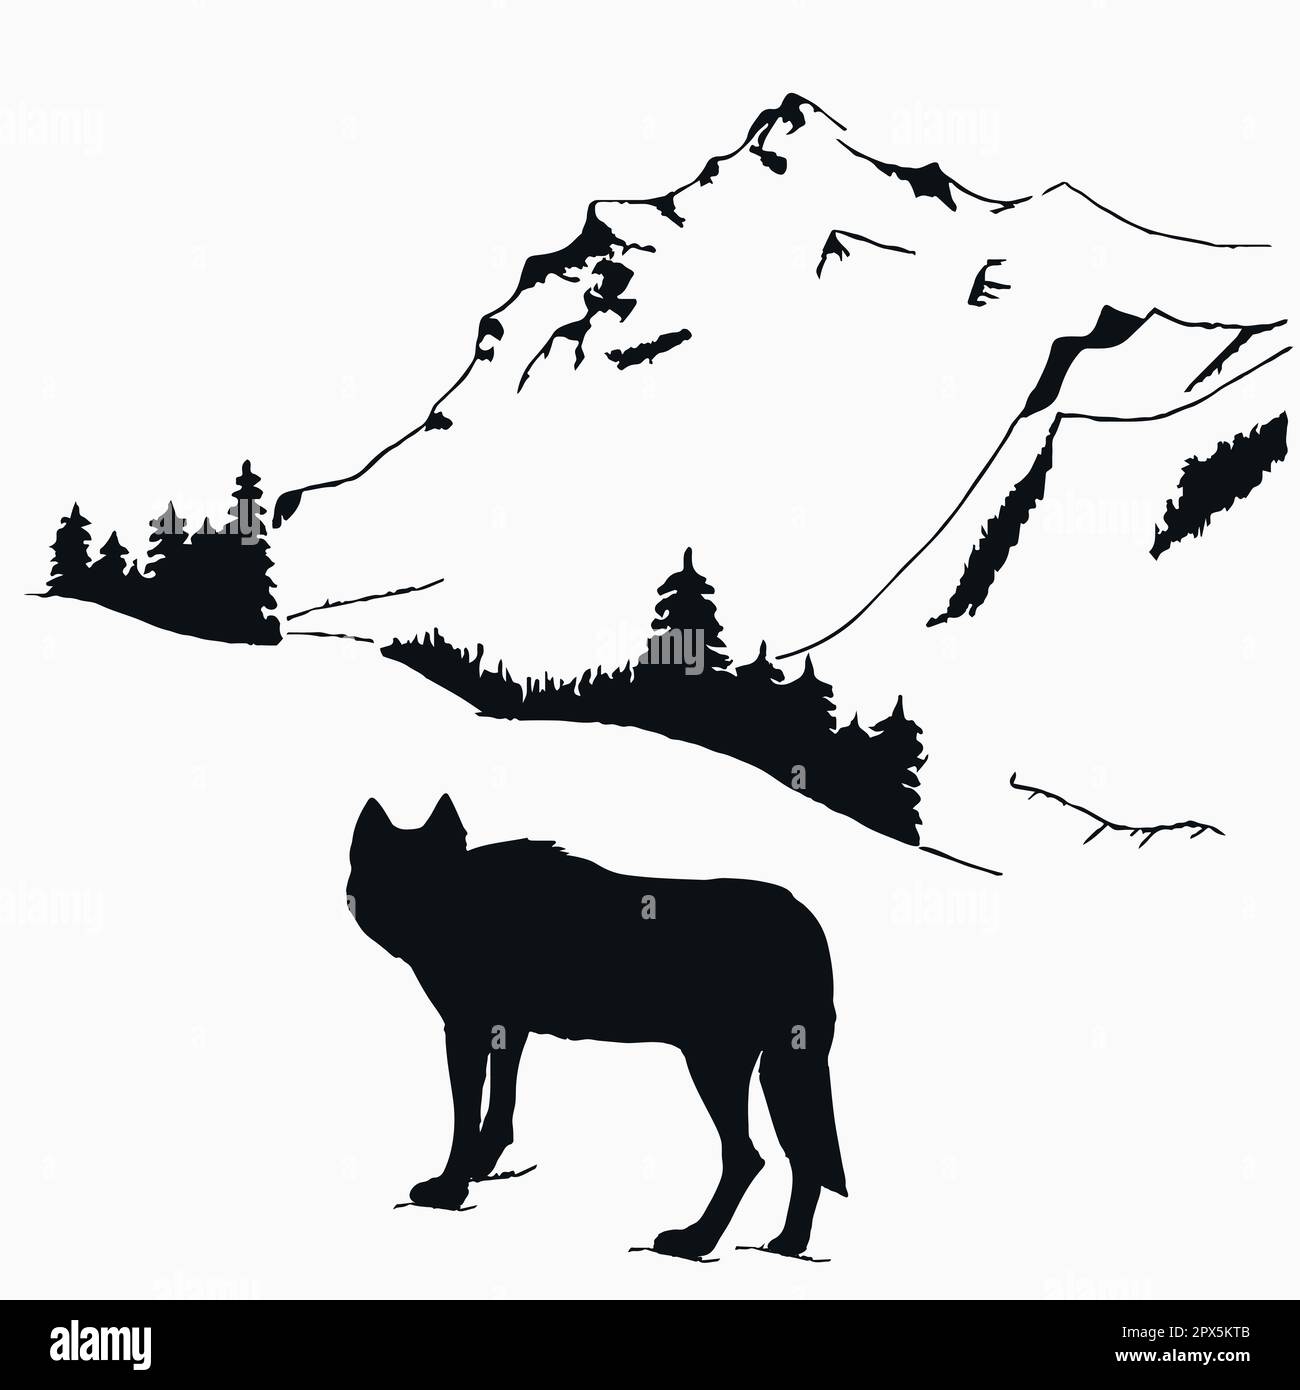 Der Wolf schaut auf Berge und Wälder. Handgezeichnete Kunst in Schwarzweißfarben. Skizze einer wilden Natur. Tier und Natur. Vektorkunst Stock Vektor